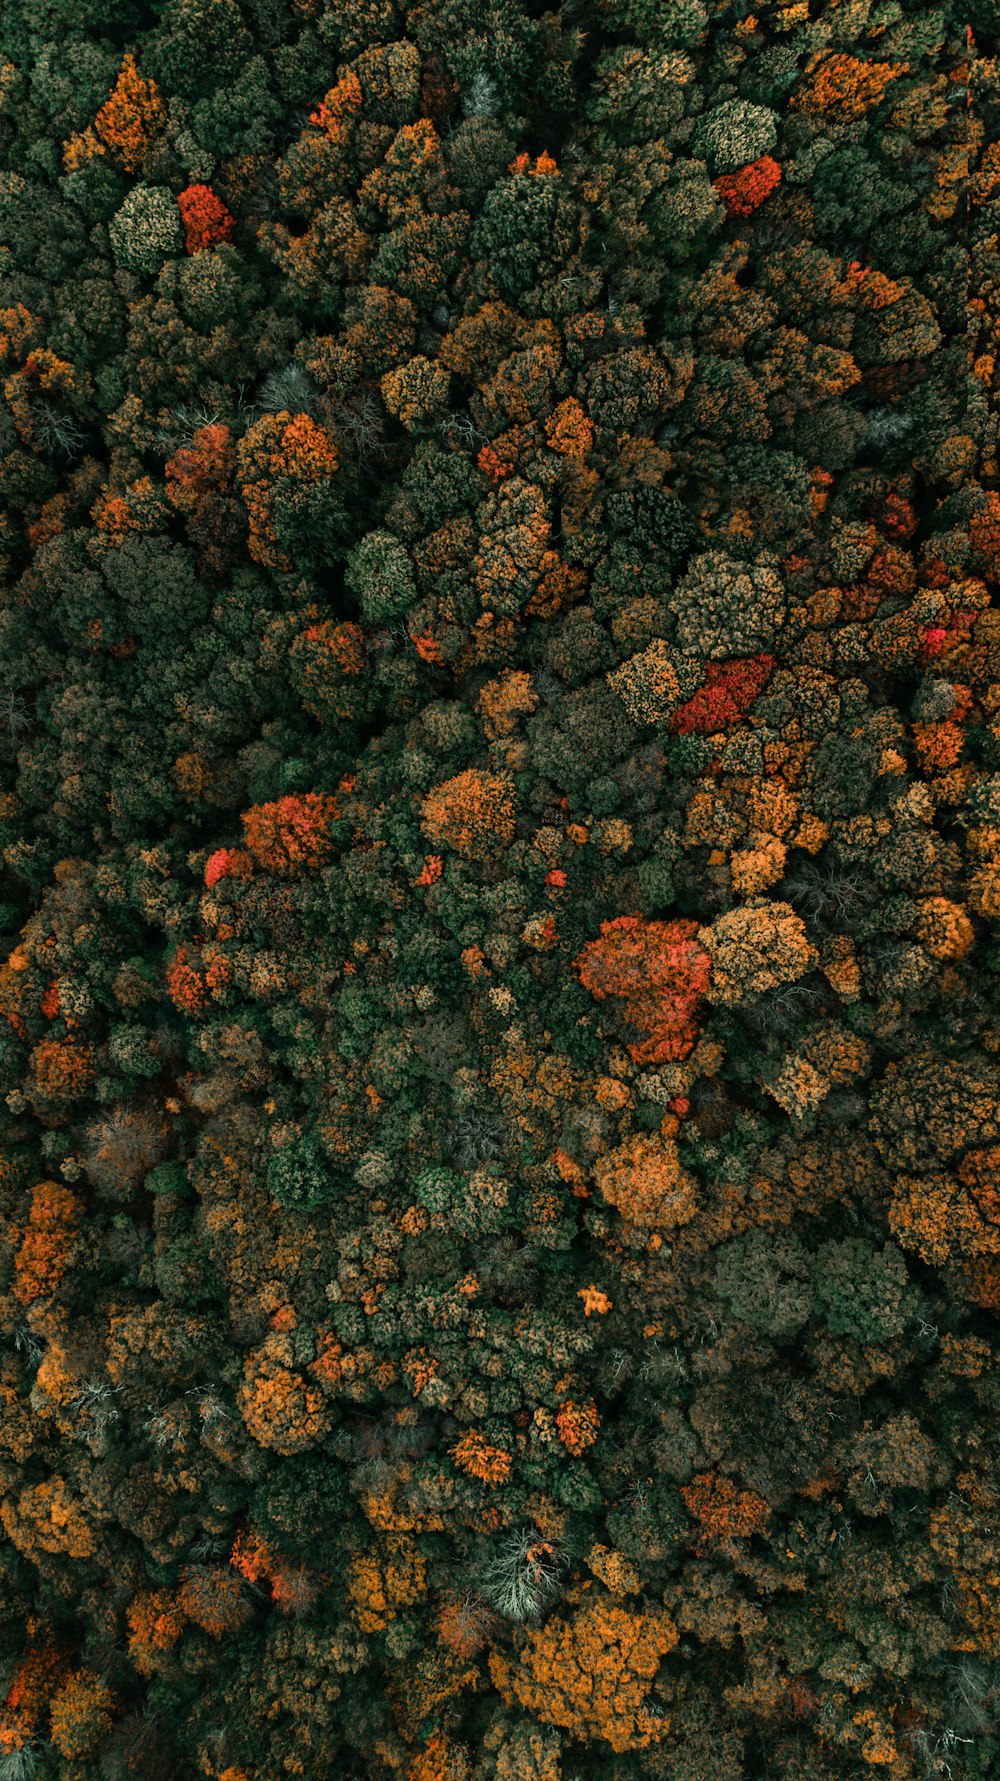 Luftaufnahmen von grünblättrigen Bäumen